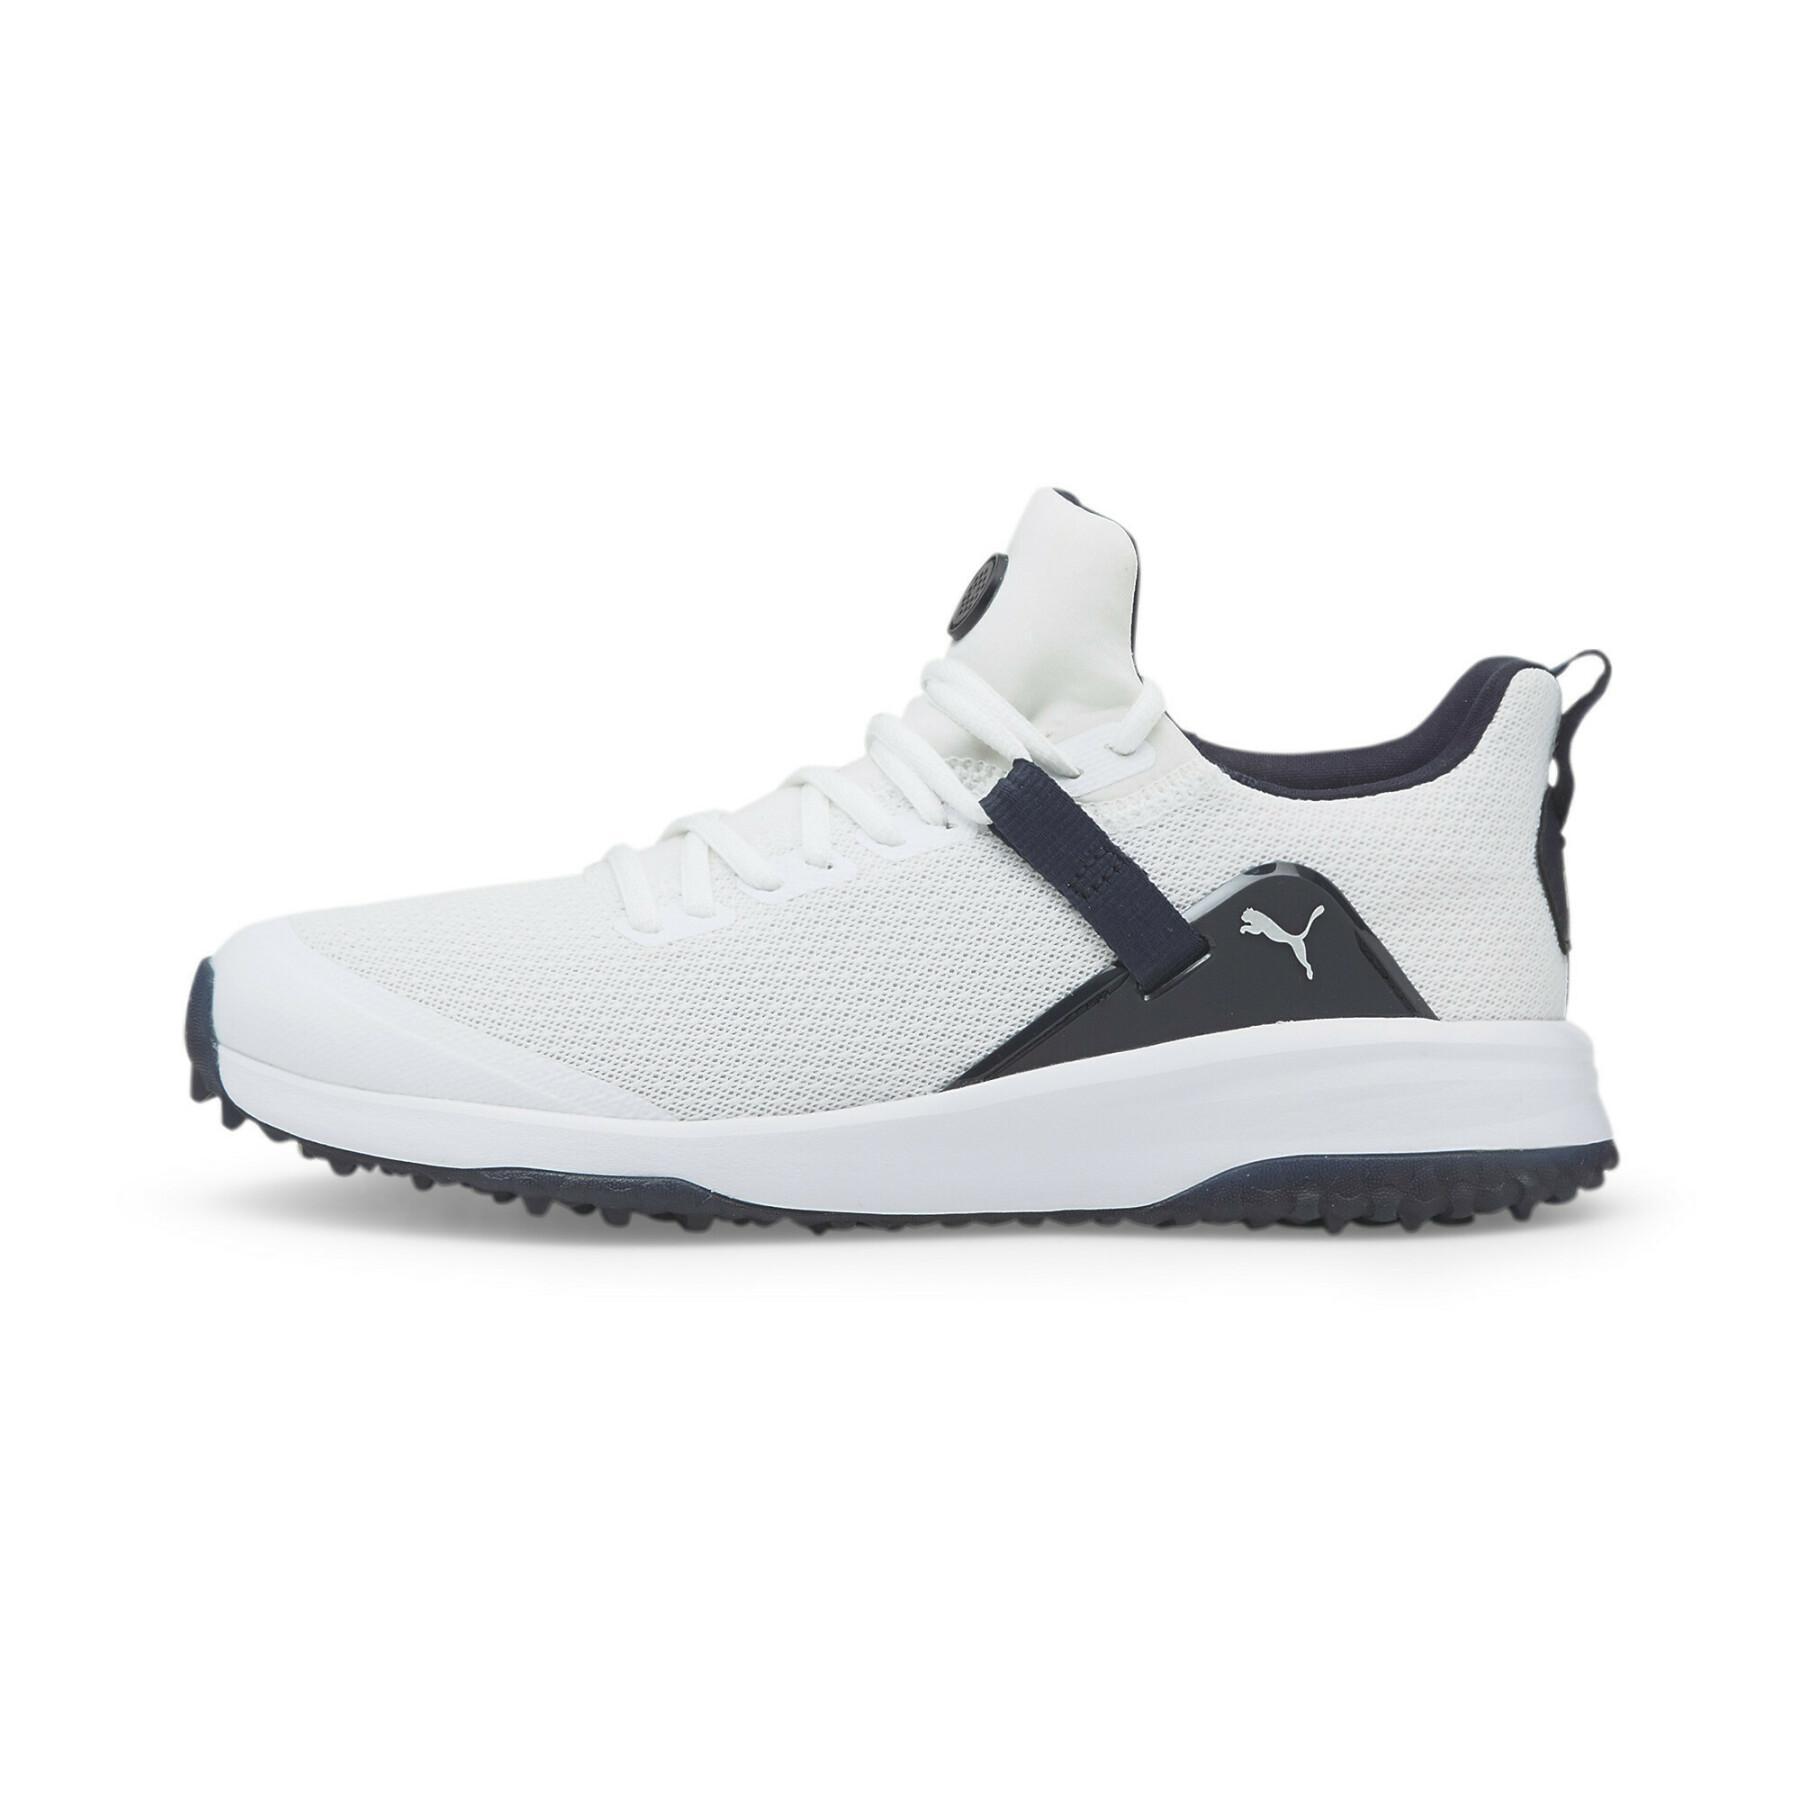 NEW Men's Puma Fusion Evo Spikeless Golf Shoes Puma White / Navy Blazer 9.5 M - image 1 of 3